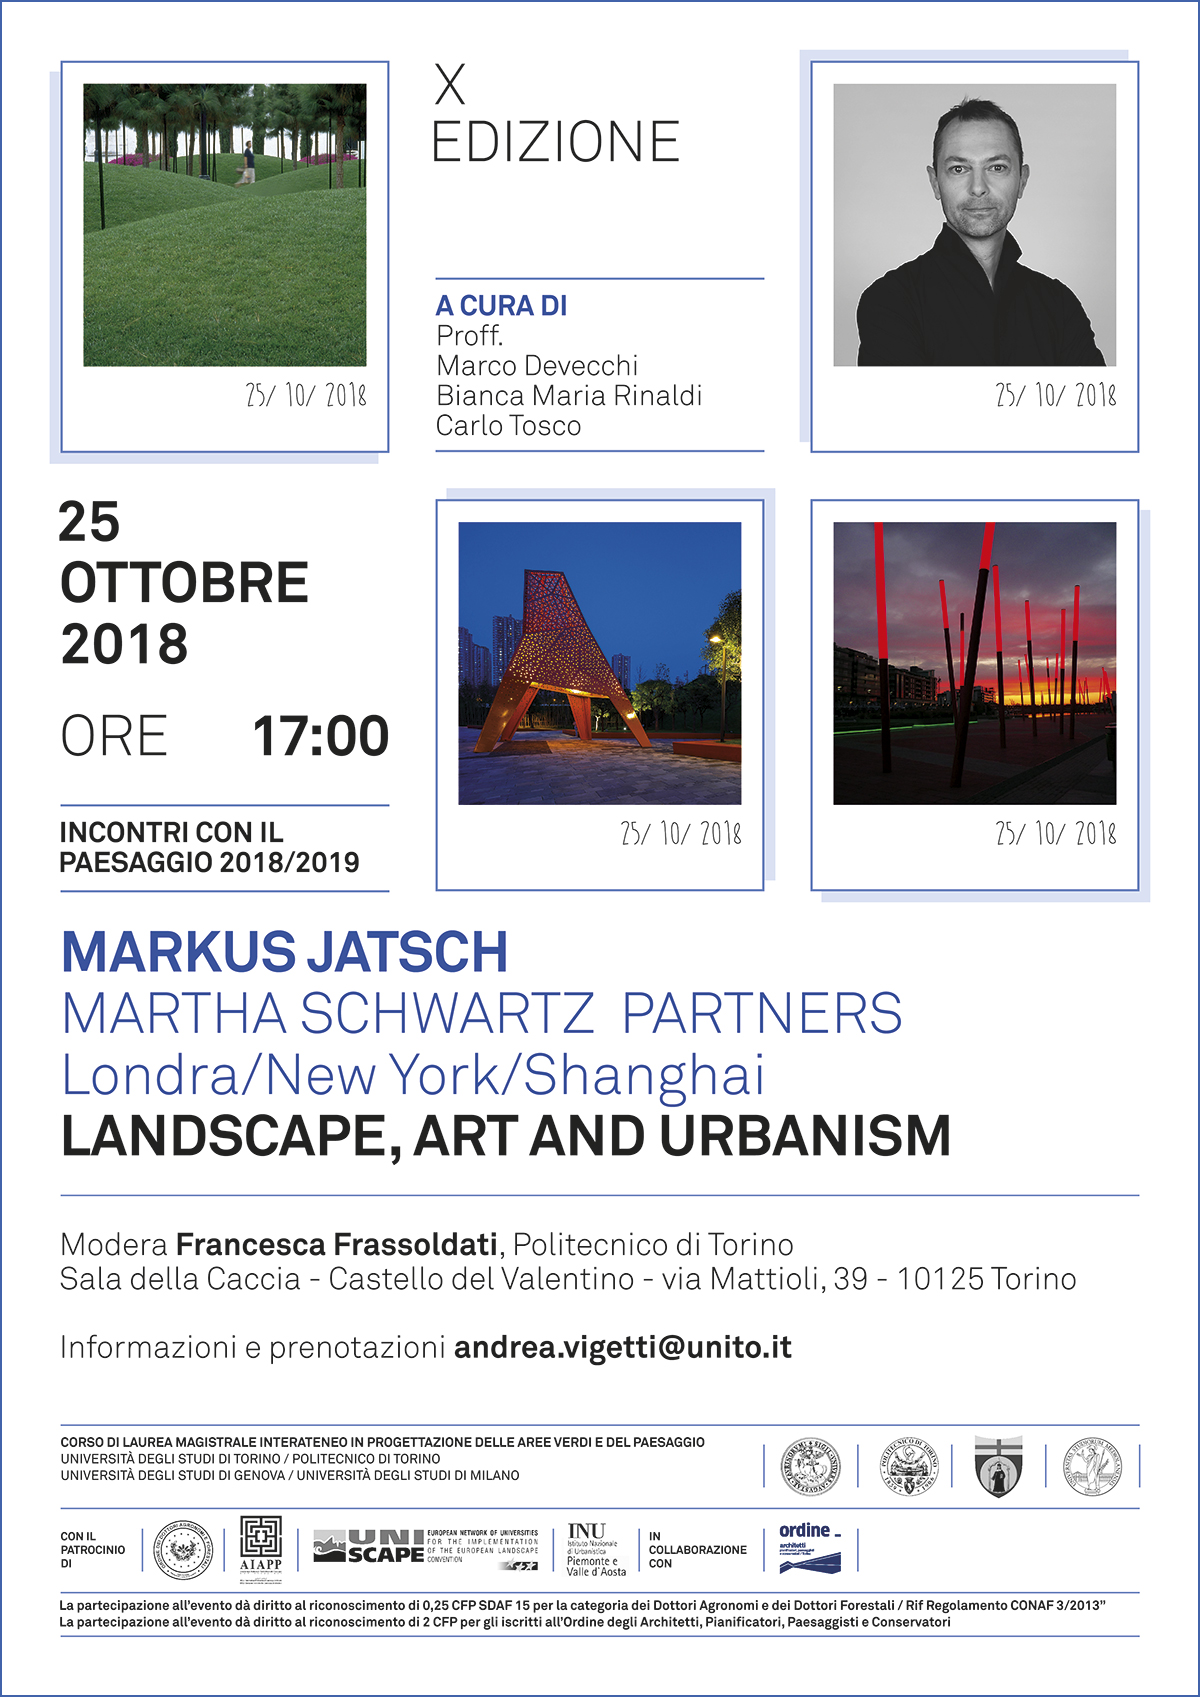 Seminario di Markus Jatsch, (Martha Schwartz Partners Londra/New York/Shanghai) su Landscape, art and urbanism, Sala della Caccia del Castello del Valentino a Torino, giovedì 25 ottobre 2018.